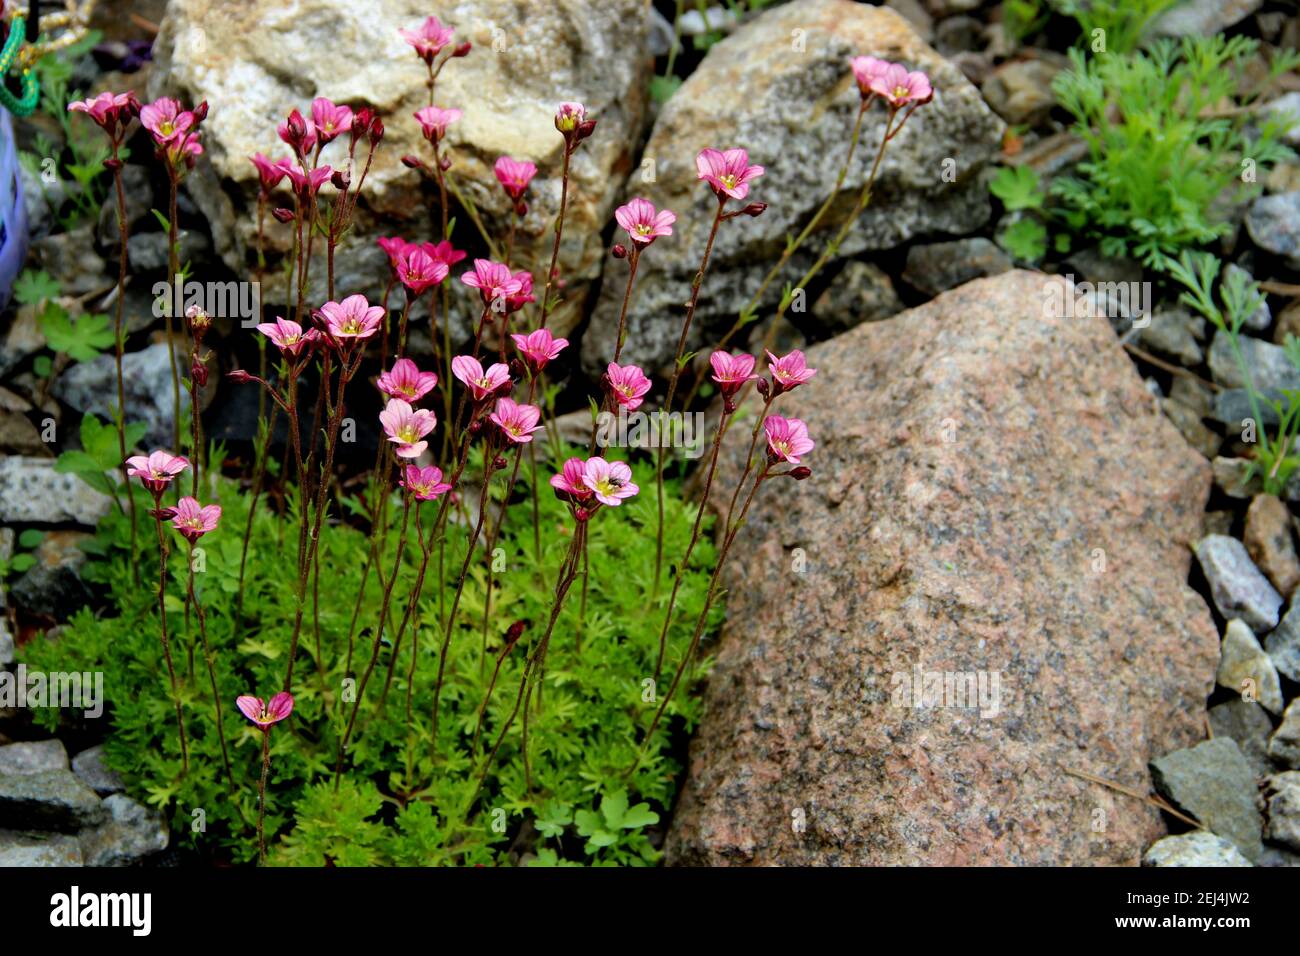 De petites fleurs roses sur de longues tiges ont germé à travers l'herbe verte, entourée de pierres. Banque D'Images